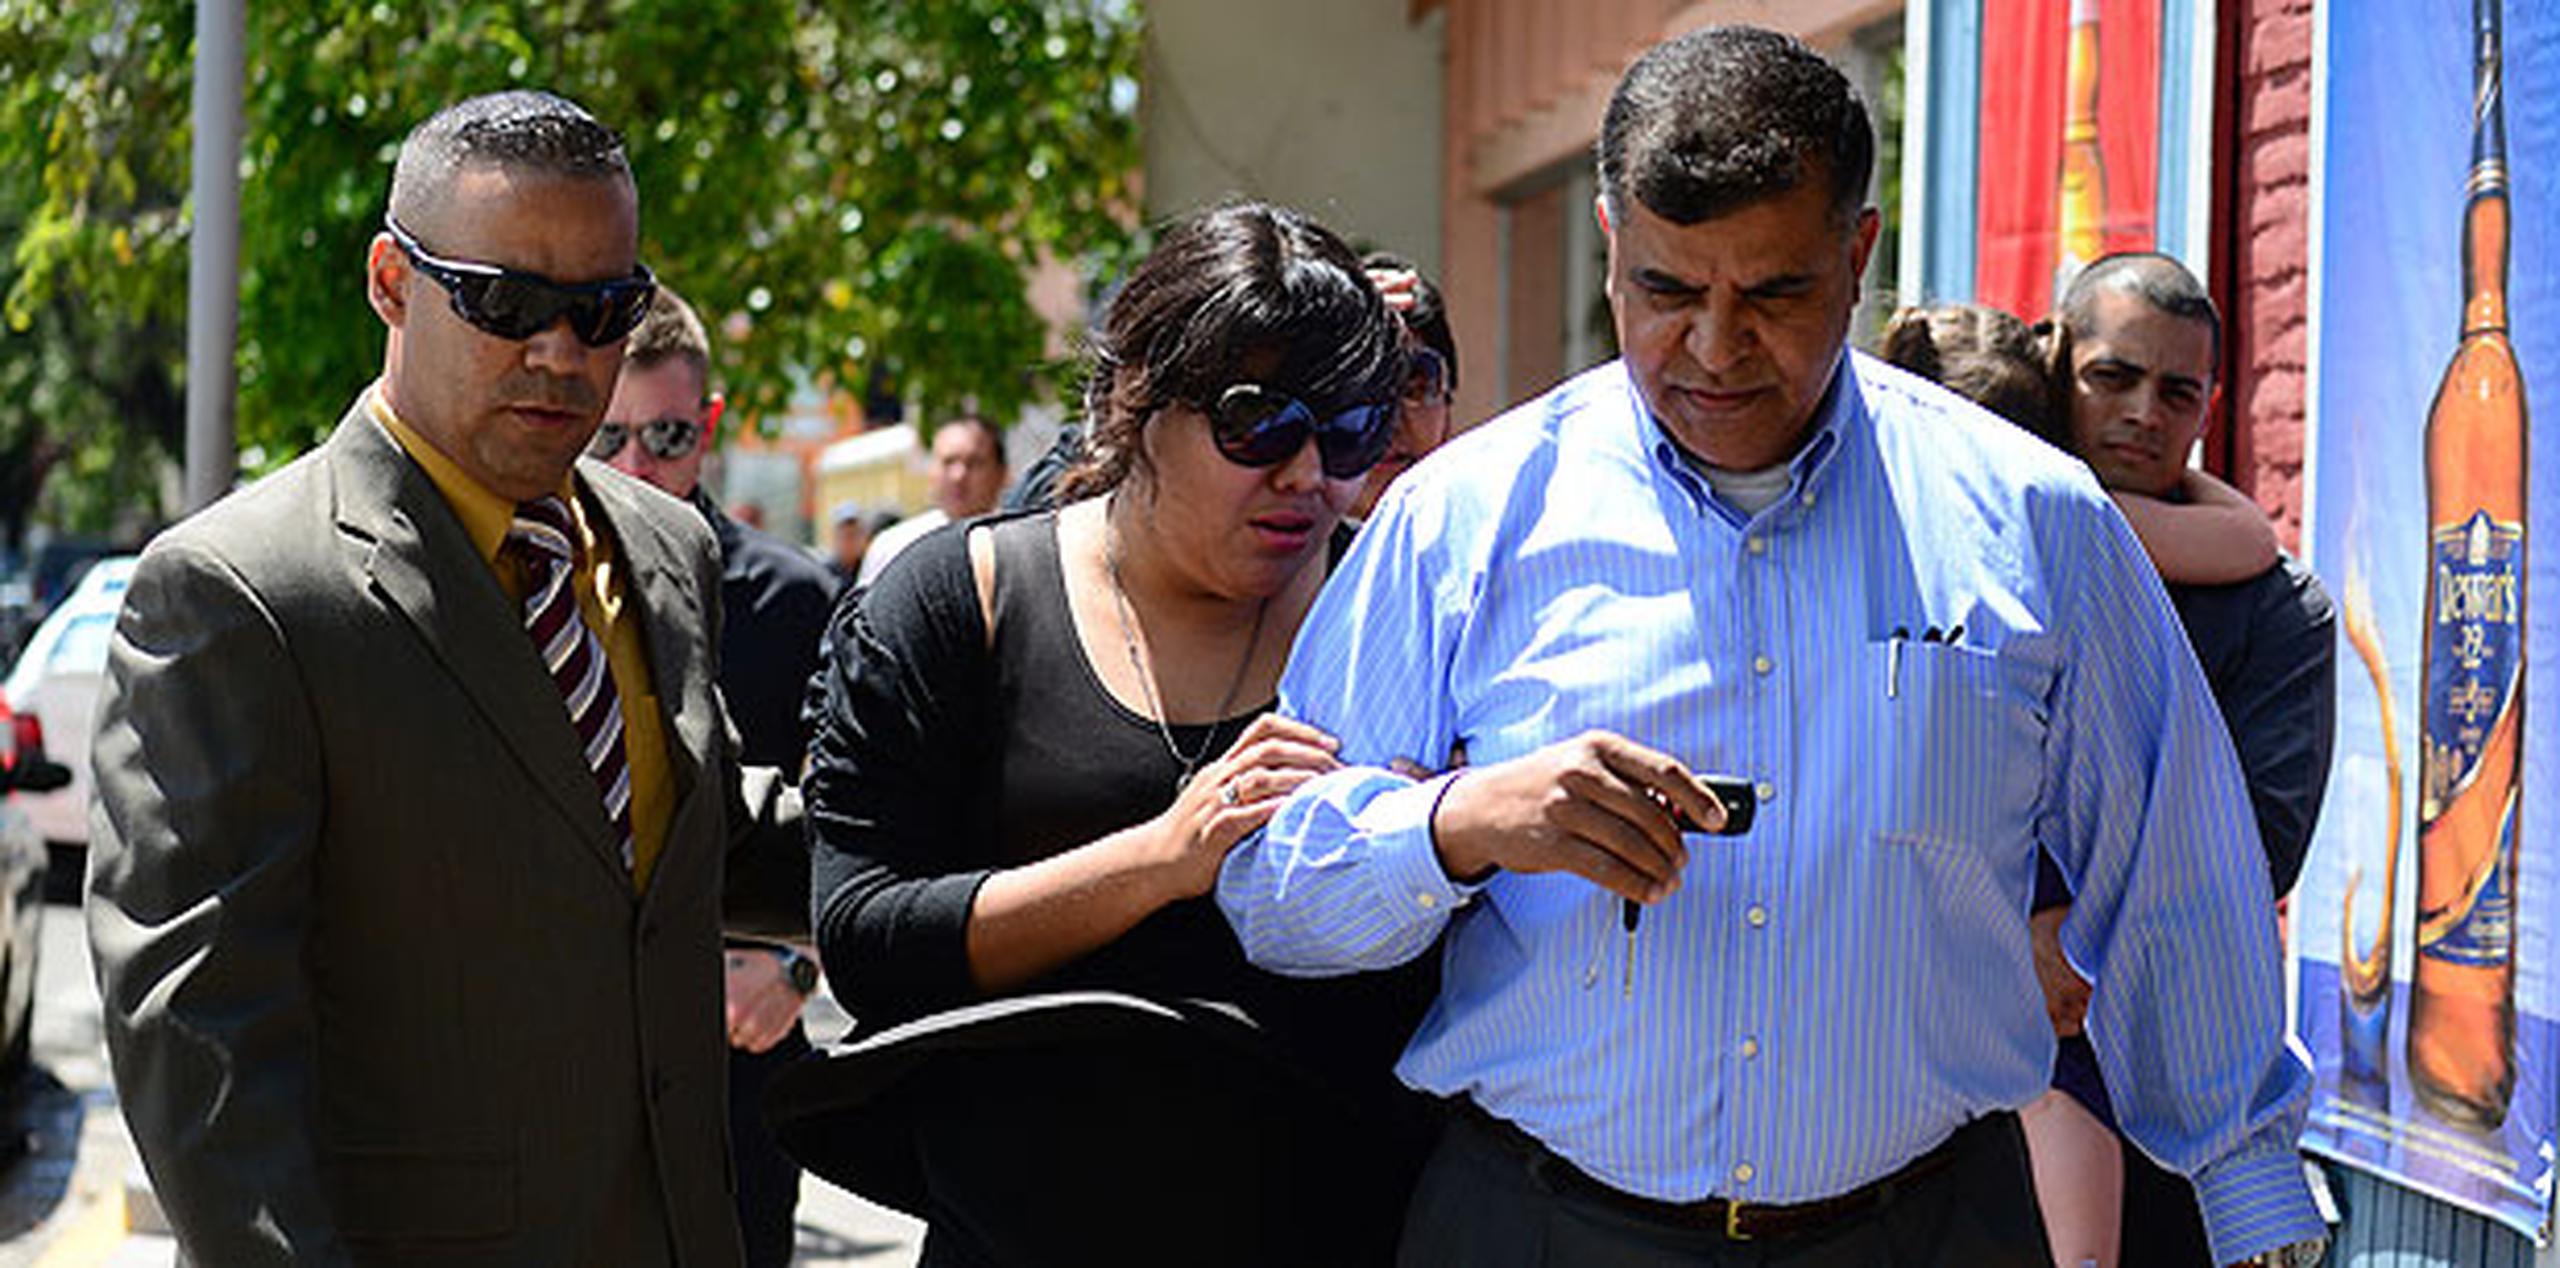 Karla López, la esposa de López y de nacionalidad mexicana, salió visiblemente acongojada y sin hacer expresiones.  (tony.zayas@gfrmedia.com)